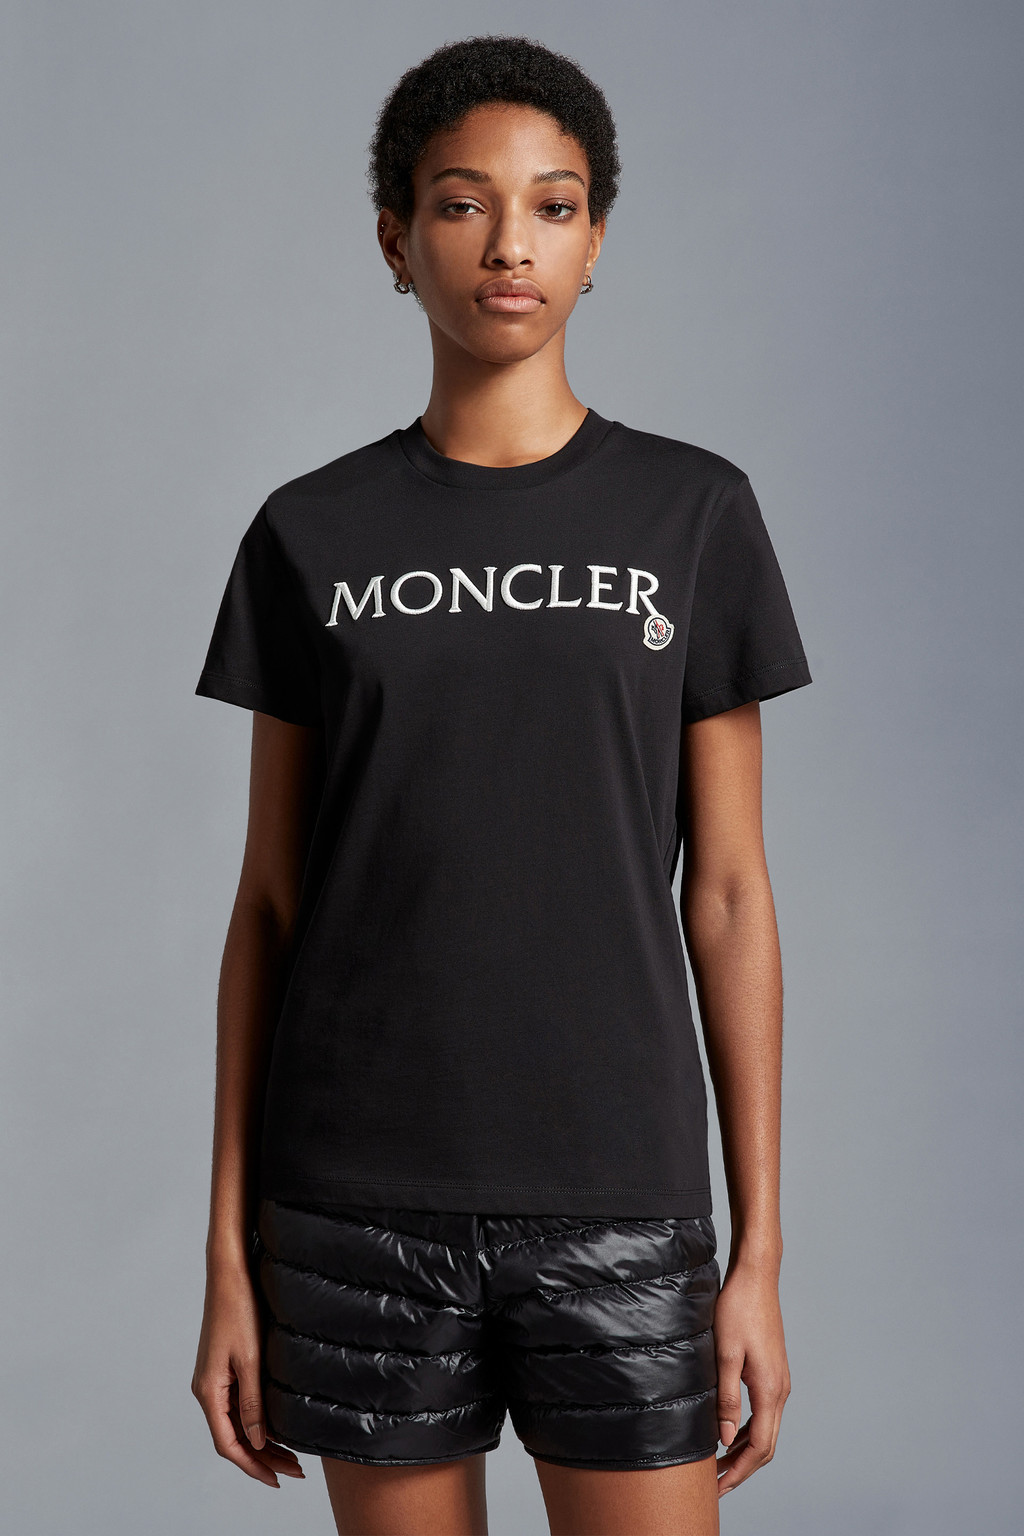 タグ付きの新品未使用品ですモンクレール MONCLER tシャツ 黒